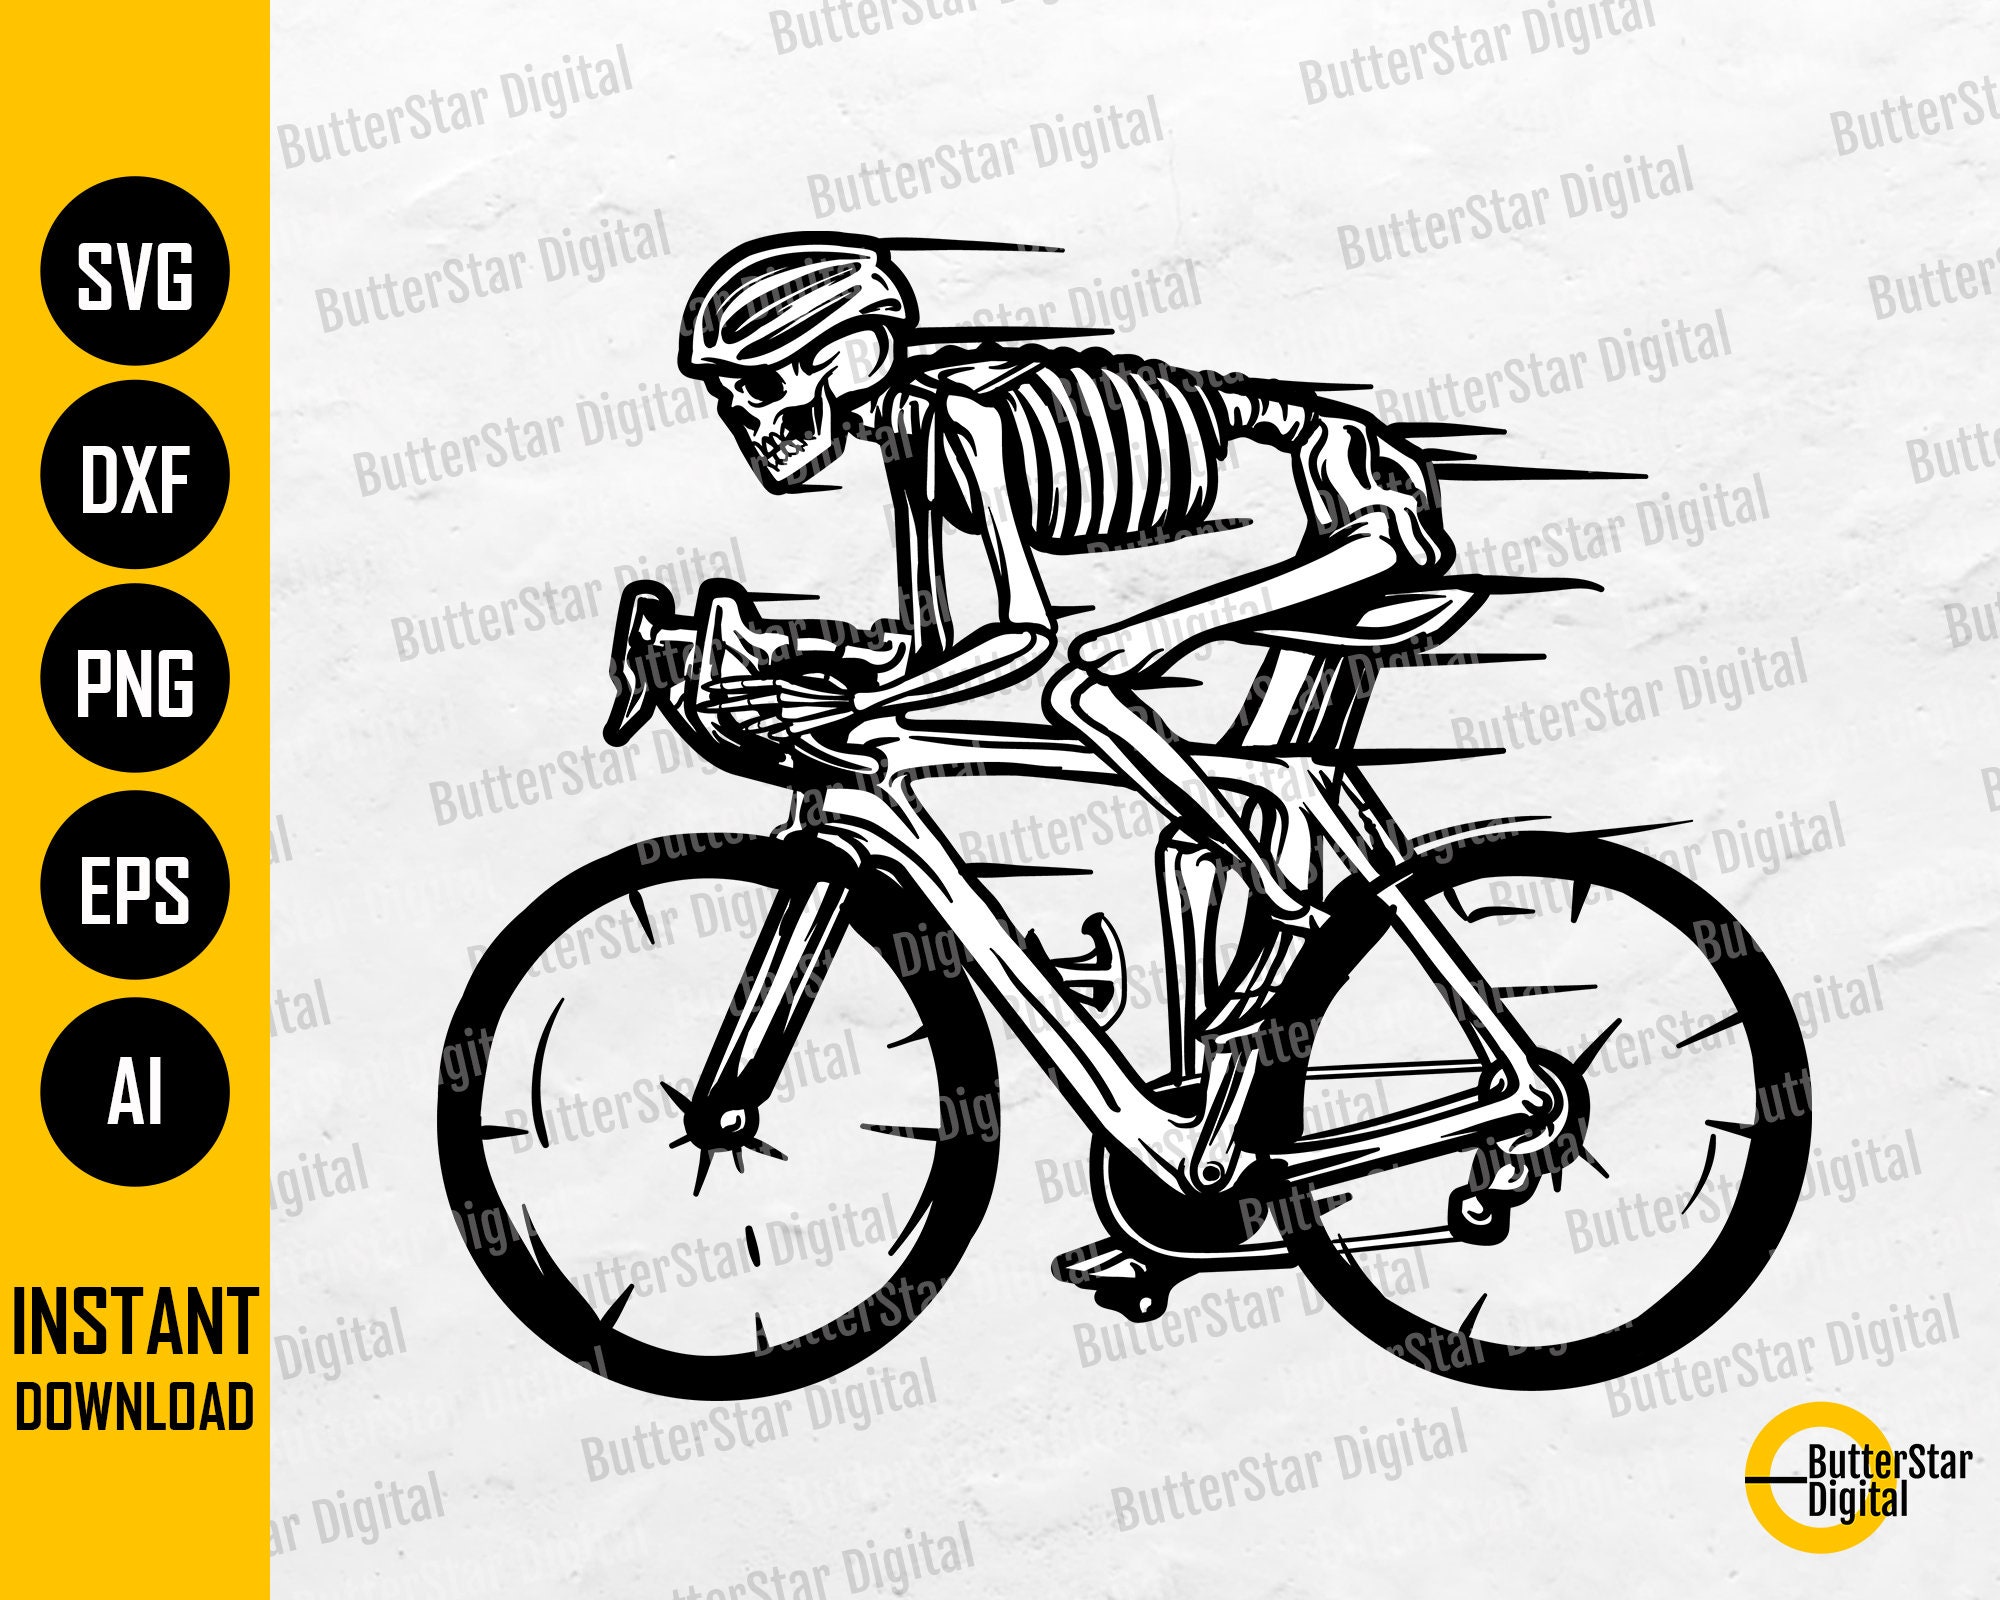 Accessoires Vélo. Clip Art Libres De Droits, Svg, Vecteurs Et